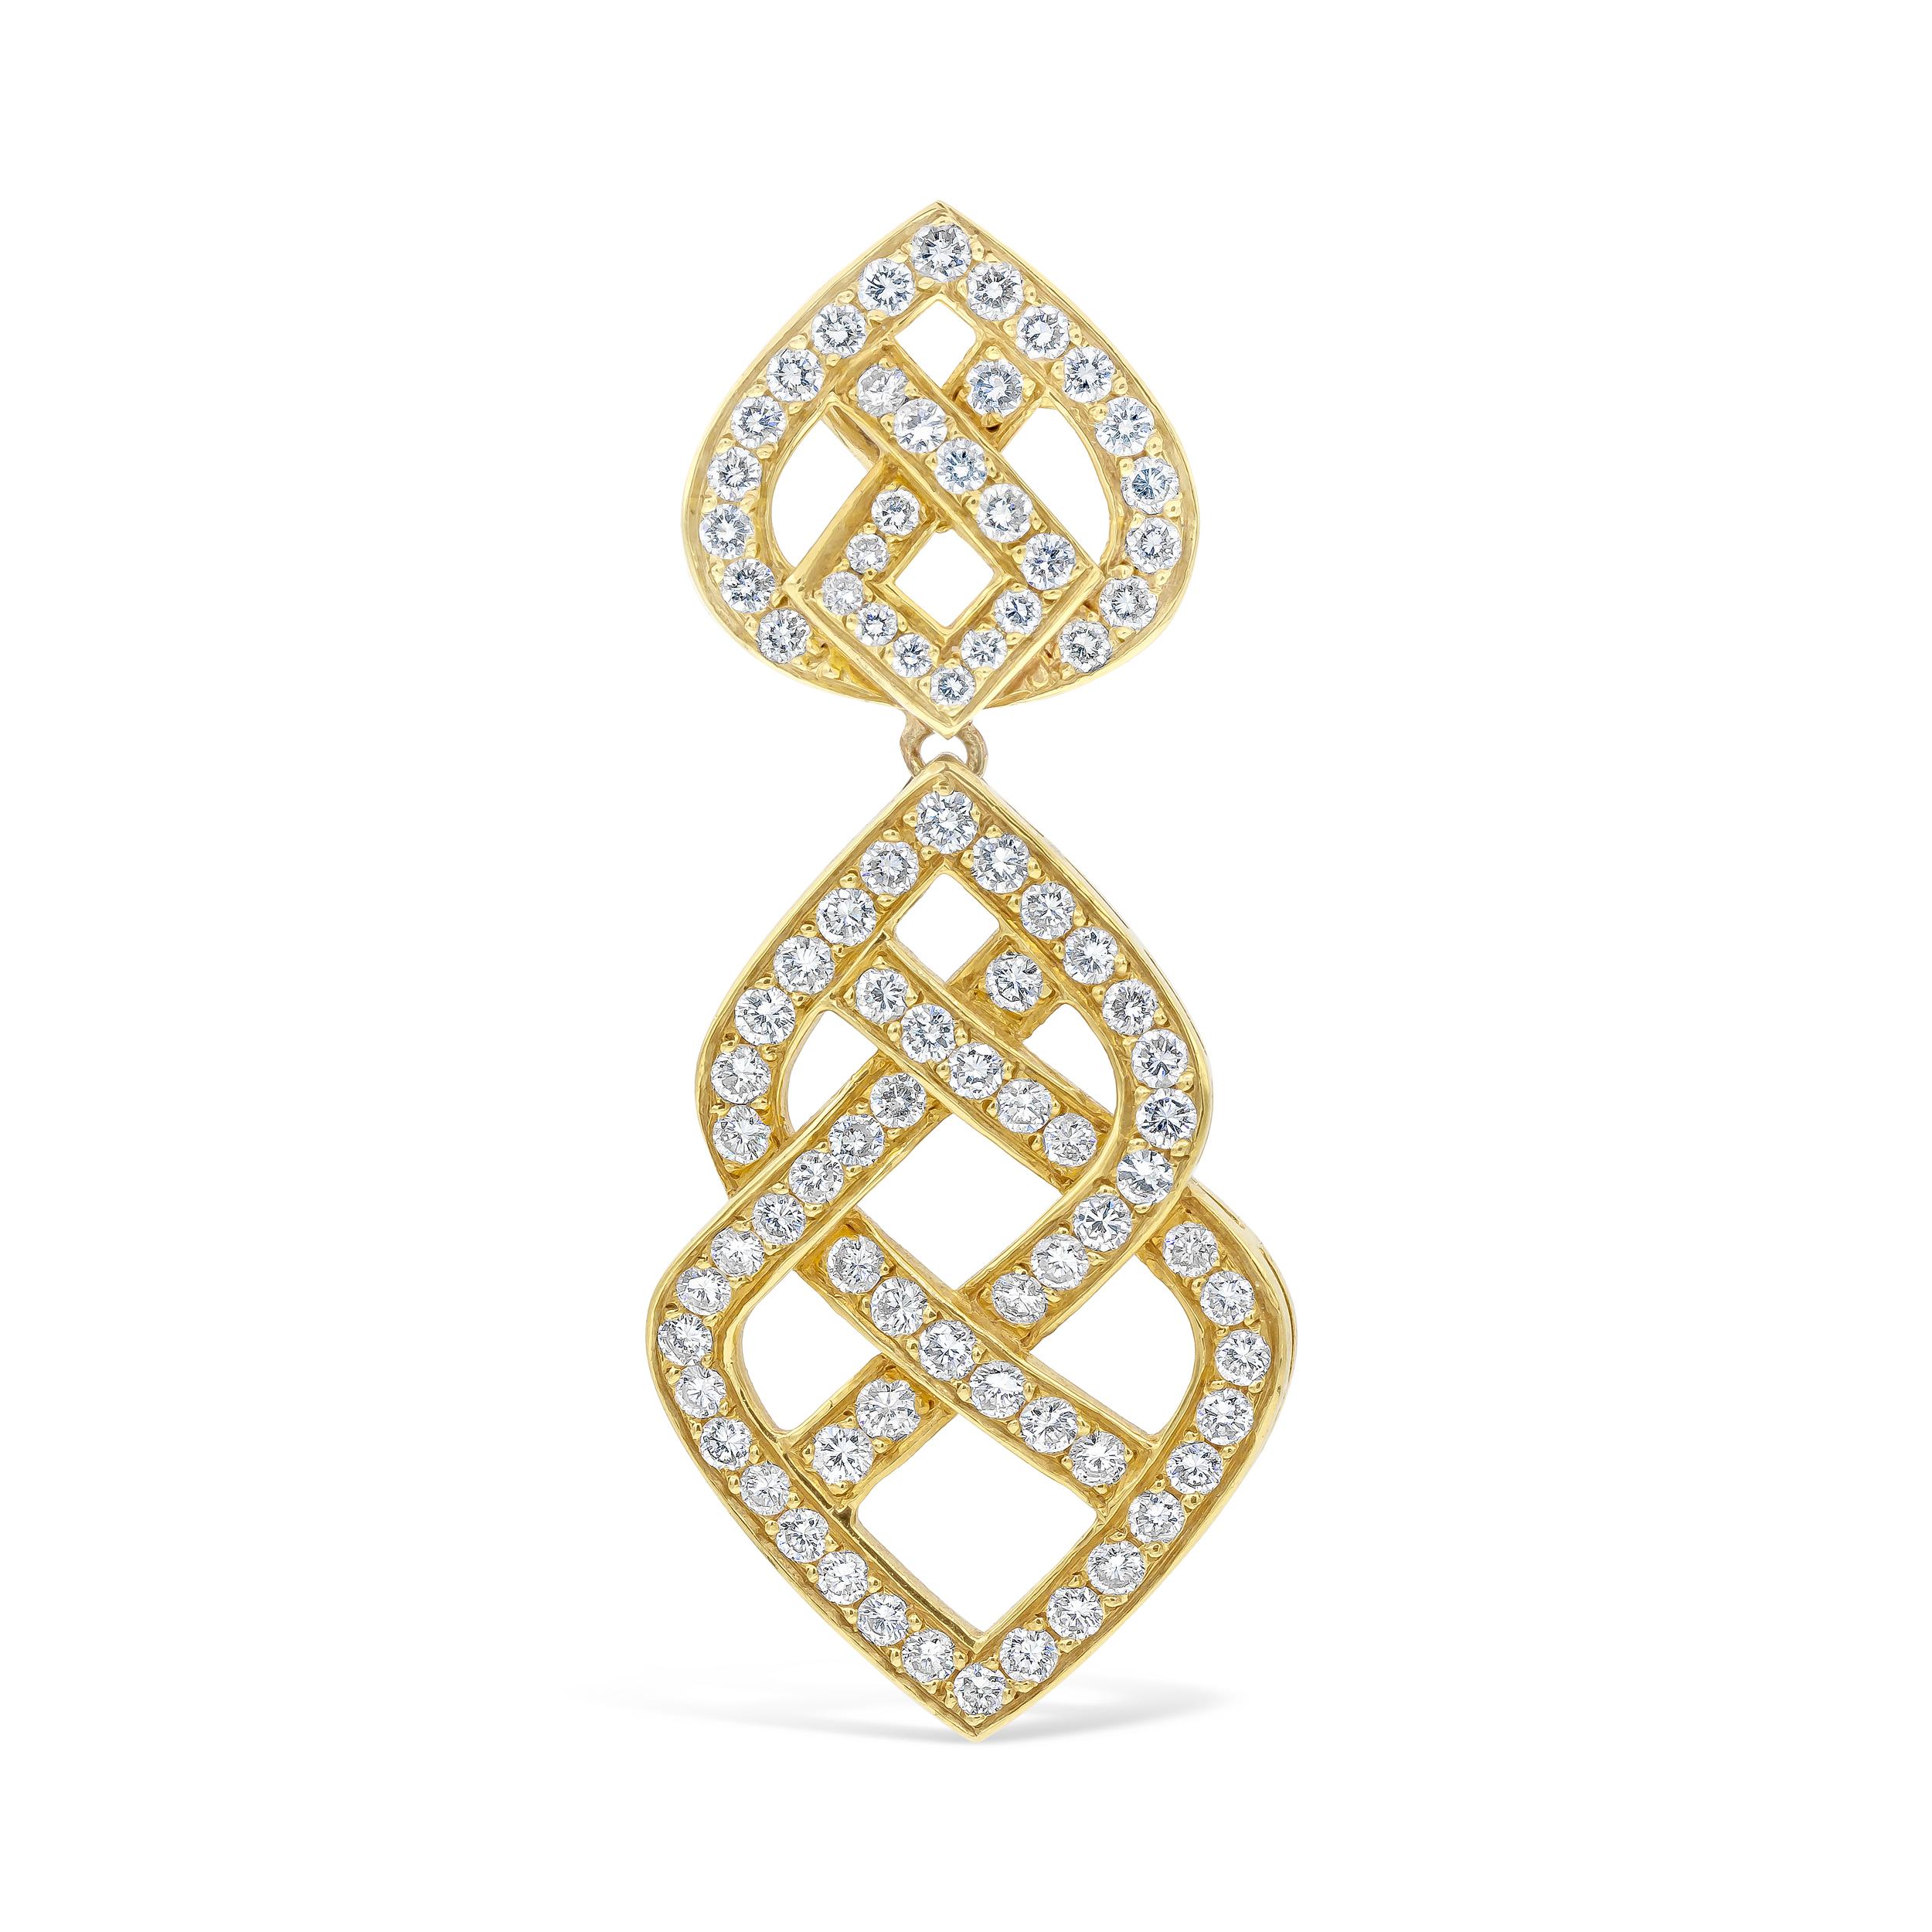 Exquisite und modische Ohrringe mit rundem Brillantschliff im Ohrgehänge  Diamanten, die sich elegant in einem durchbrochenen Design verflechten. Diamanten wiegen insgesamt 6,44 Karat und fein in 18 Karat Gelbgold gefertigt.

Stil in verschiedenen